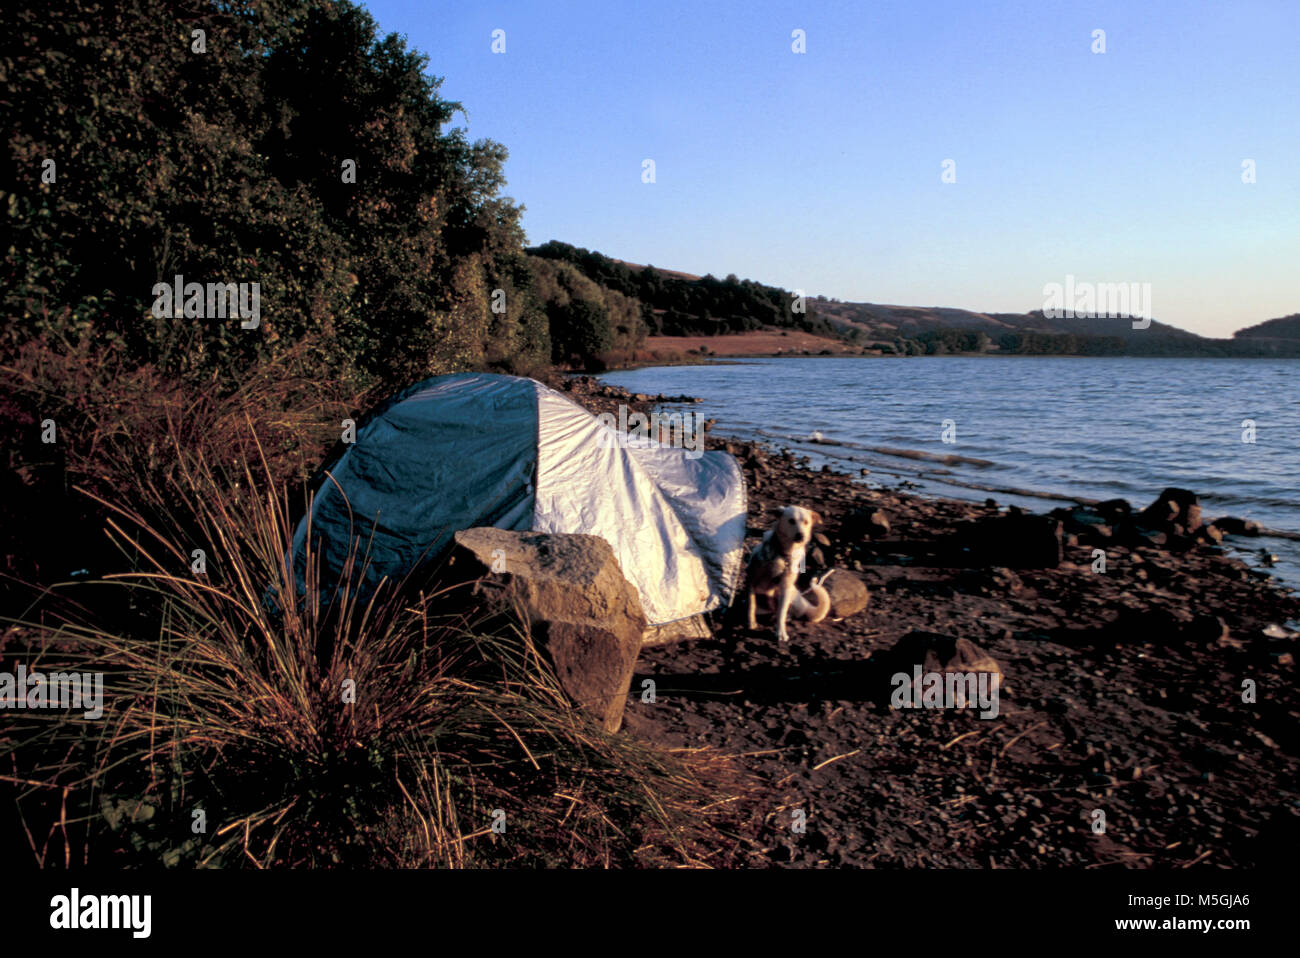 L'Italia, lazio, anguillara sabazia, lago di Martignano, tenda Foto stock -  Alamy